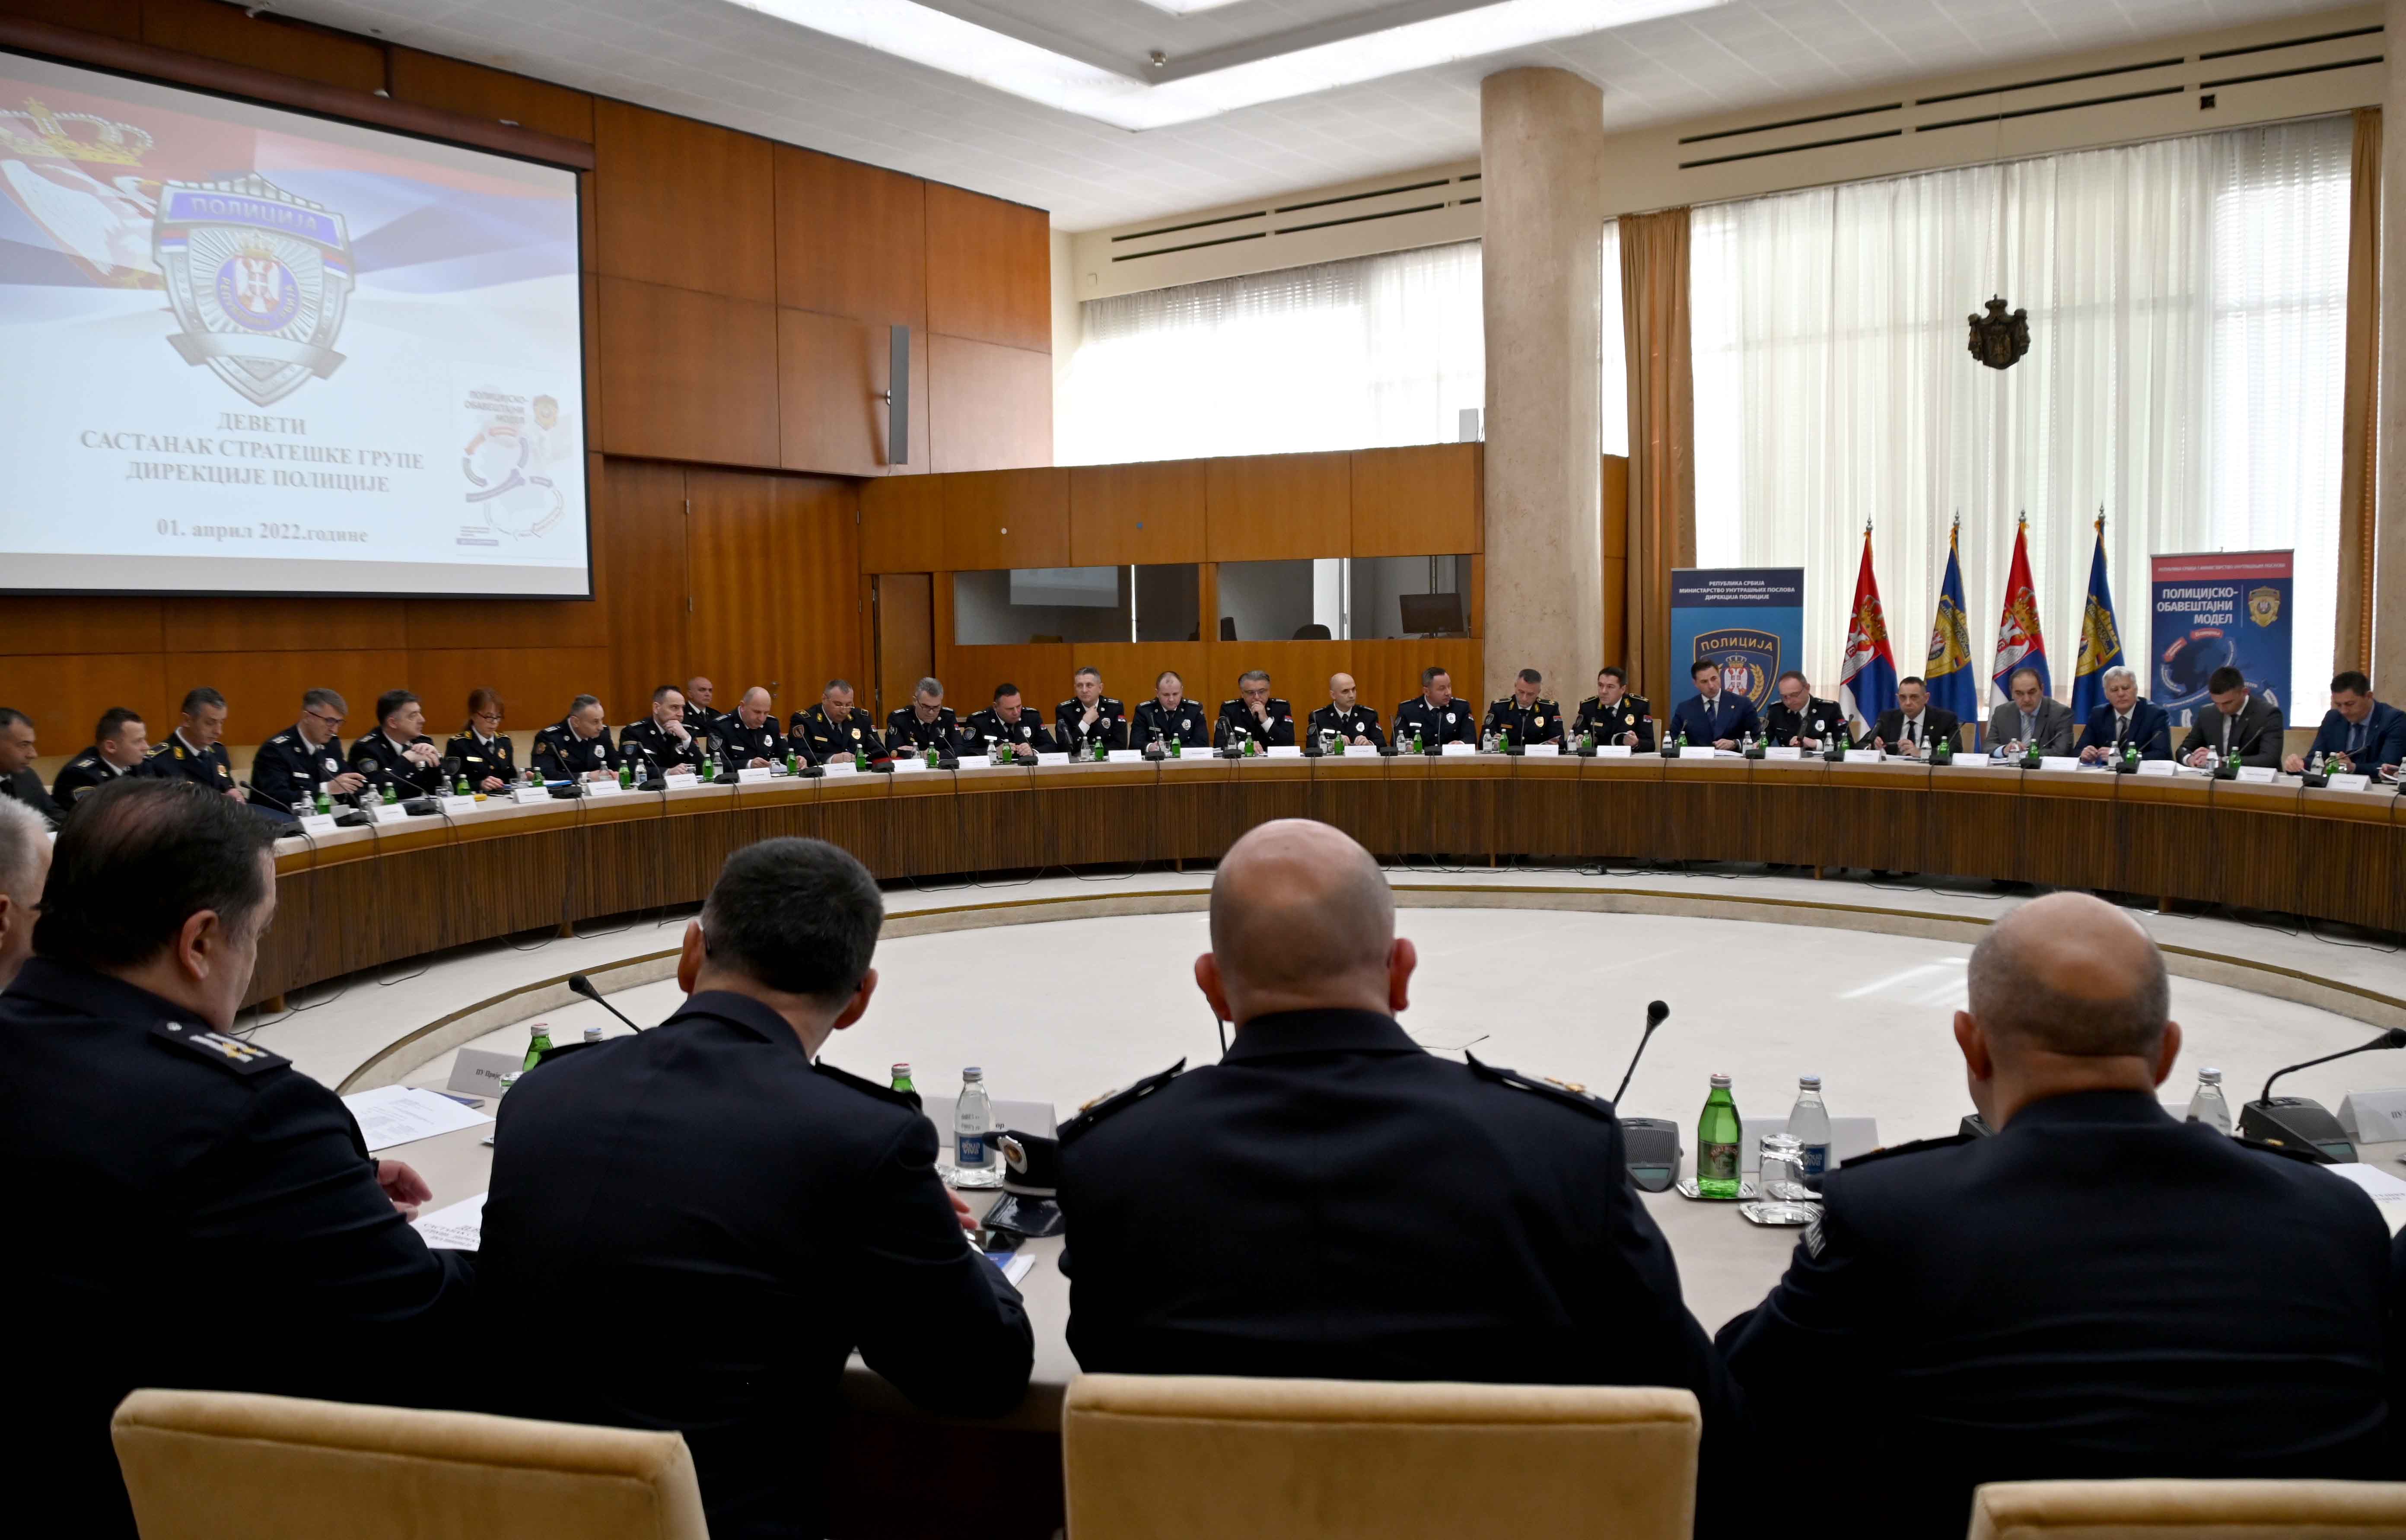 Održan 9. sastanak Strateške grupe Direkcije policije na kojem su analizirani rezultati rada Ministarstva unutrašnjih poslova